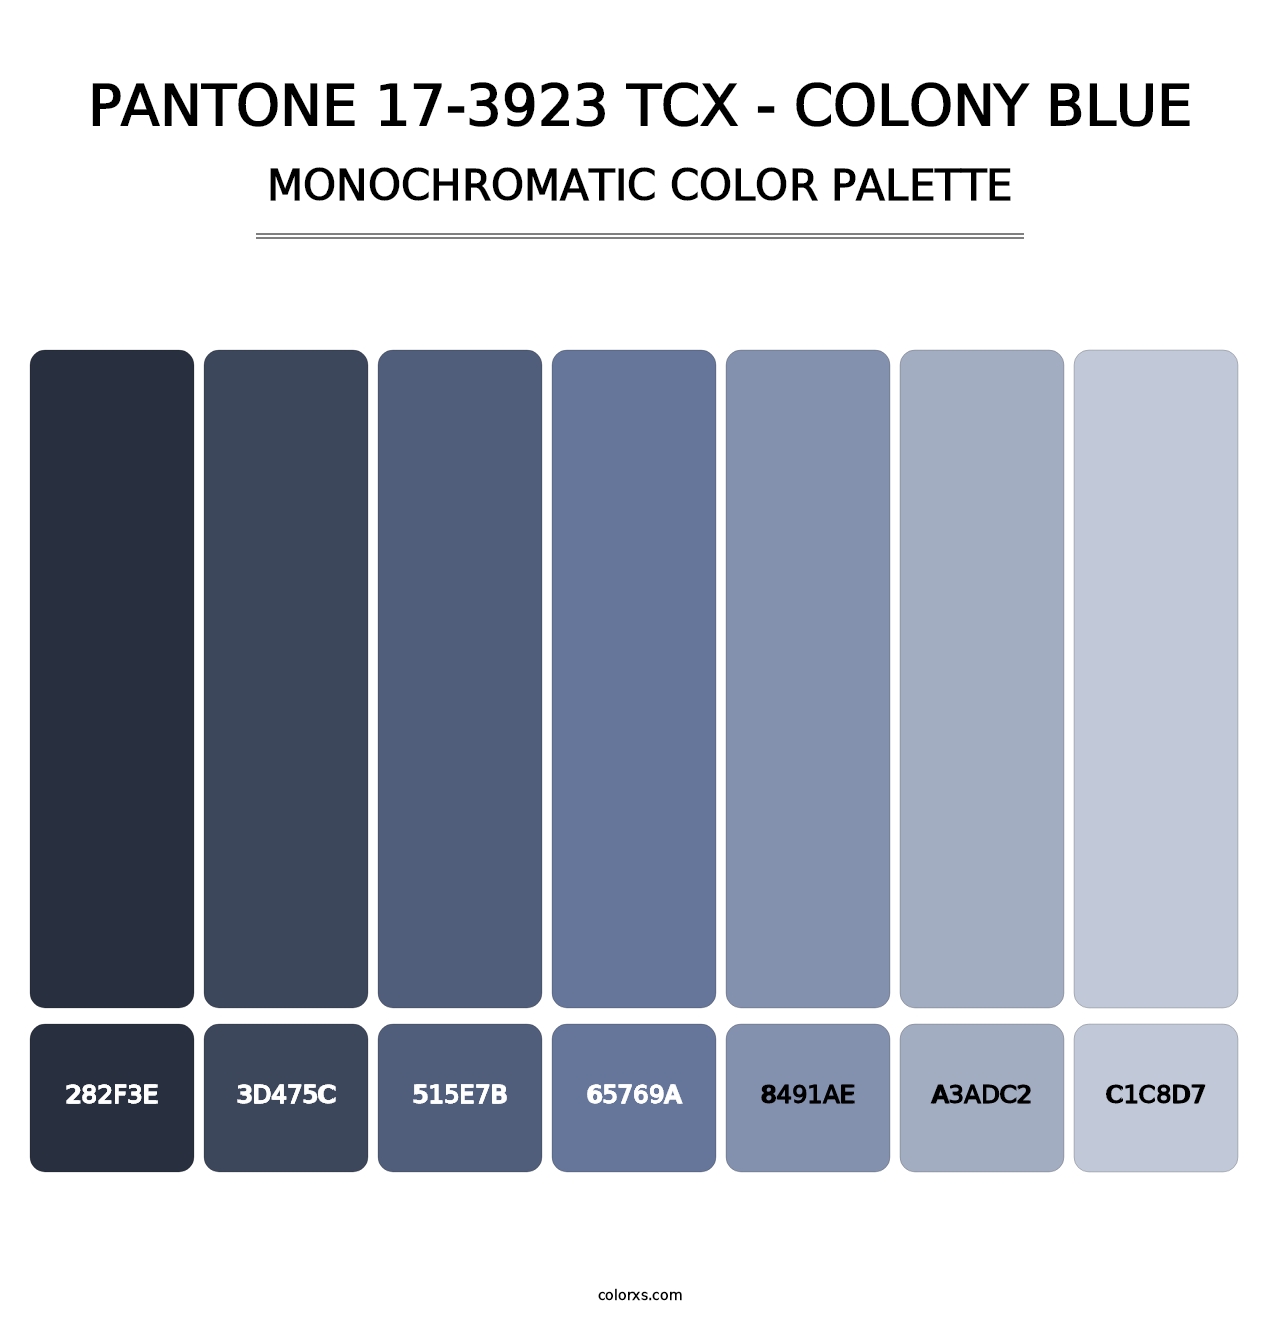 PANTONE 17-3923 TCX - Colony Blue - Monochromatic Color Palette